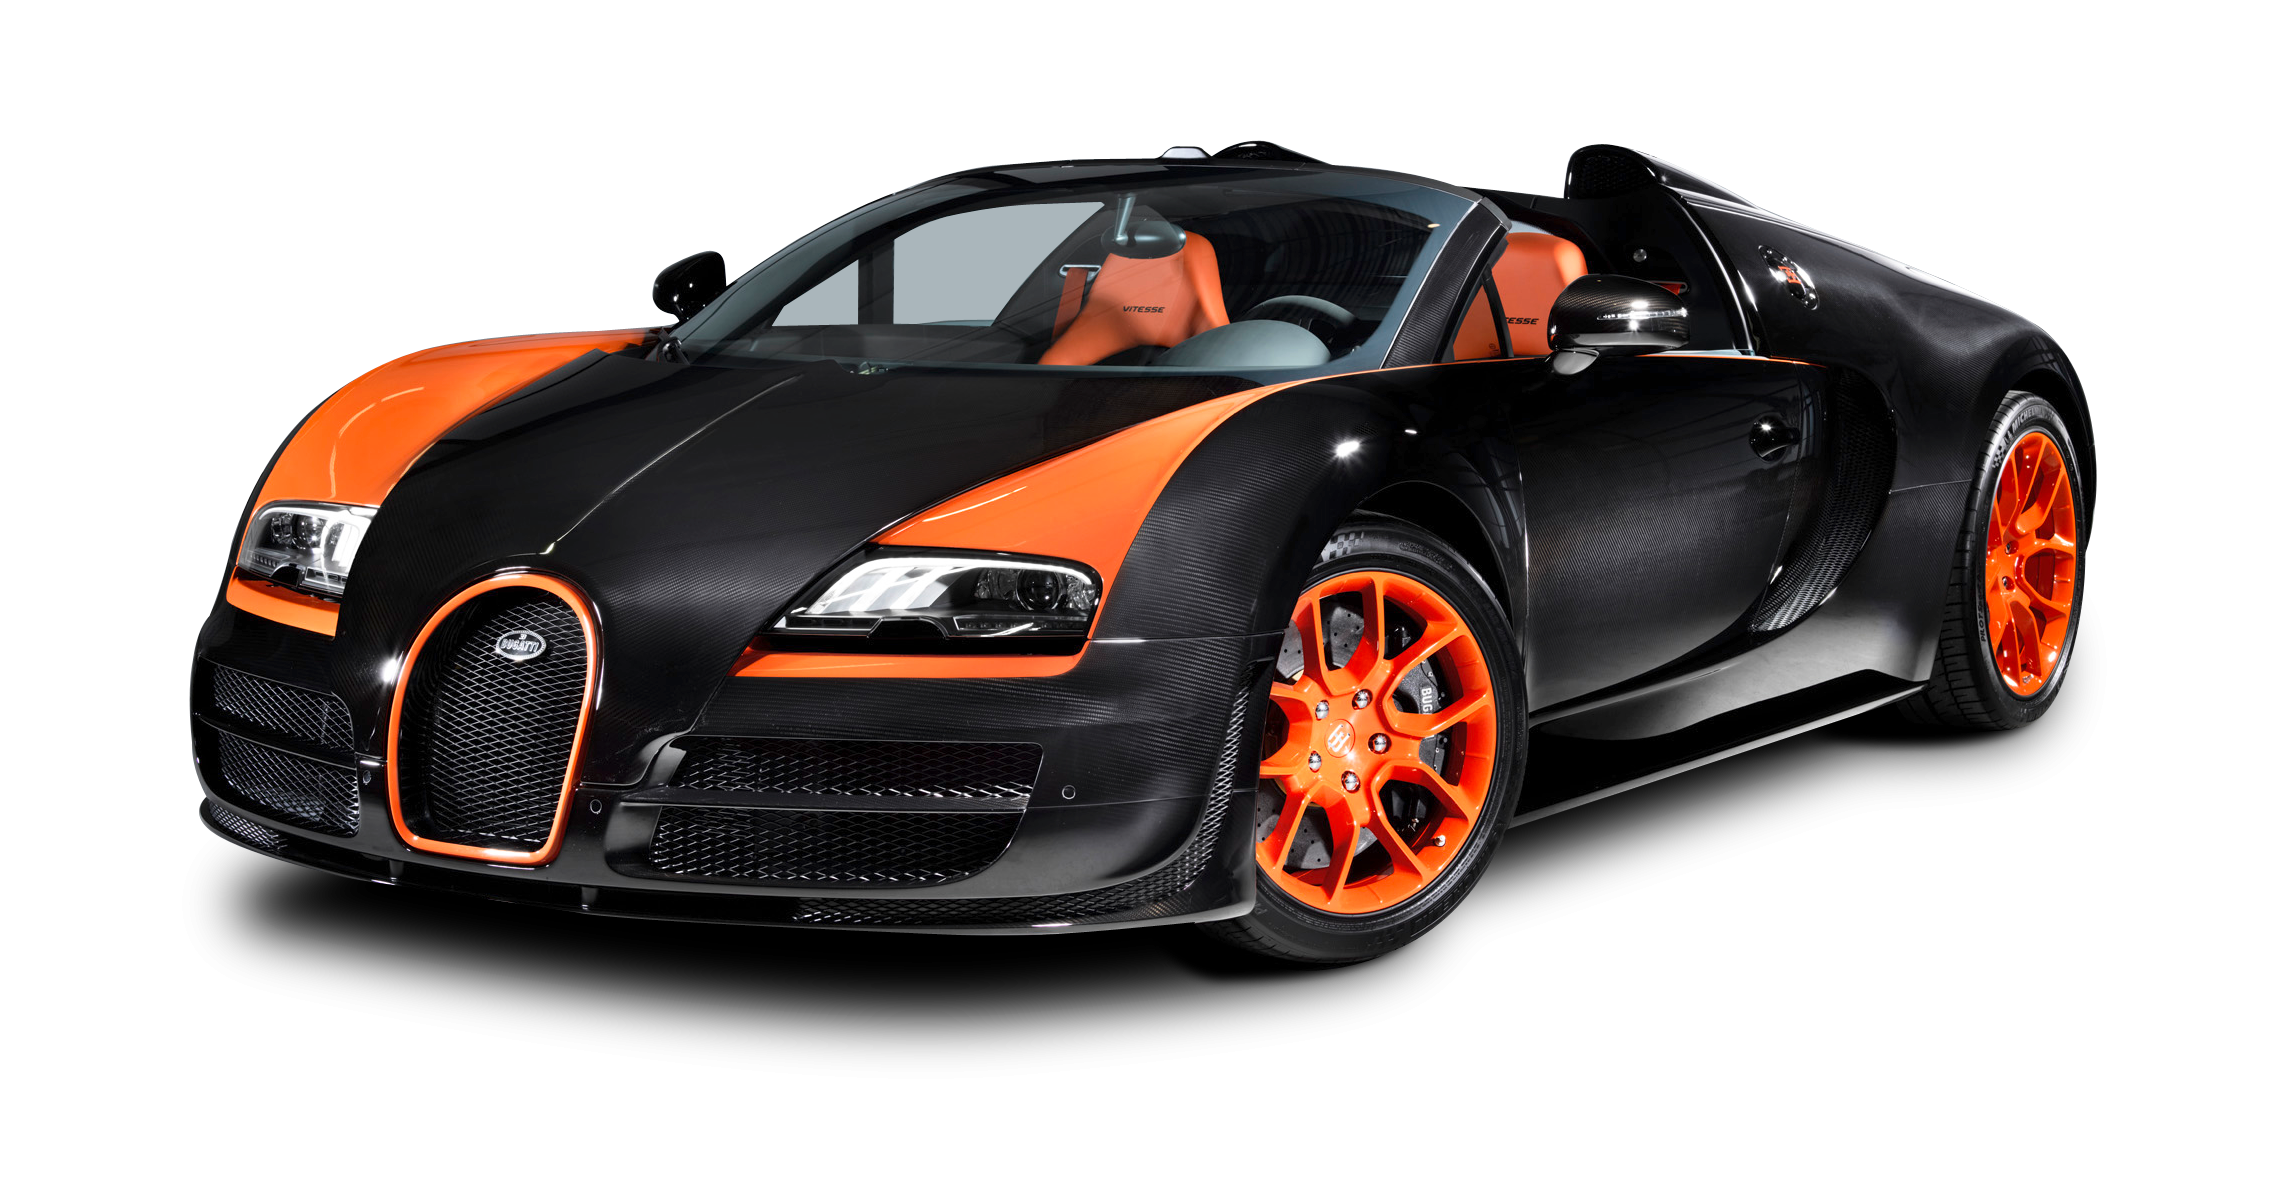 Бугатти Вейрон 16 4 super Sport. Bugatti Veyron 16.4 Grand Sport Vitesse. Бугатти Вейрон оранжевая. Бугатти Вейрон оранжевый с черным. Машинки на белом фоне